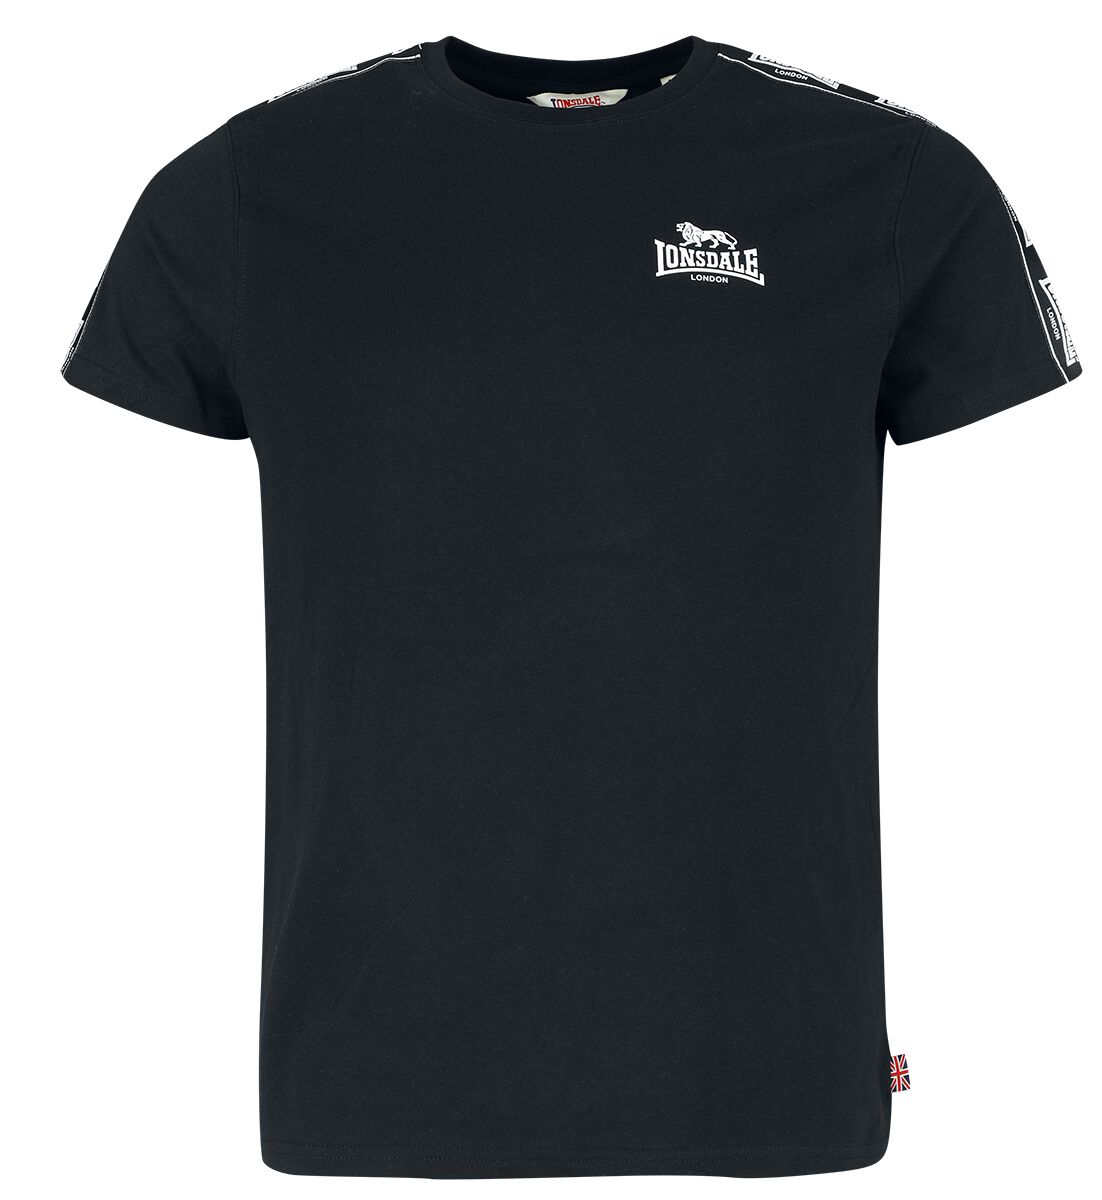 Lonsdale London T-Shirt - BRINDISTER - S bis XXL - für Männer - Größe S - schwarz